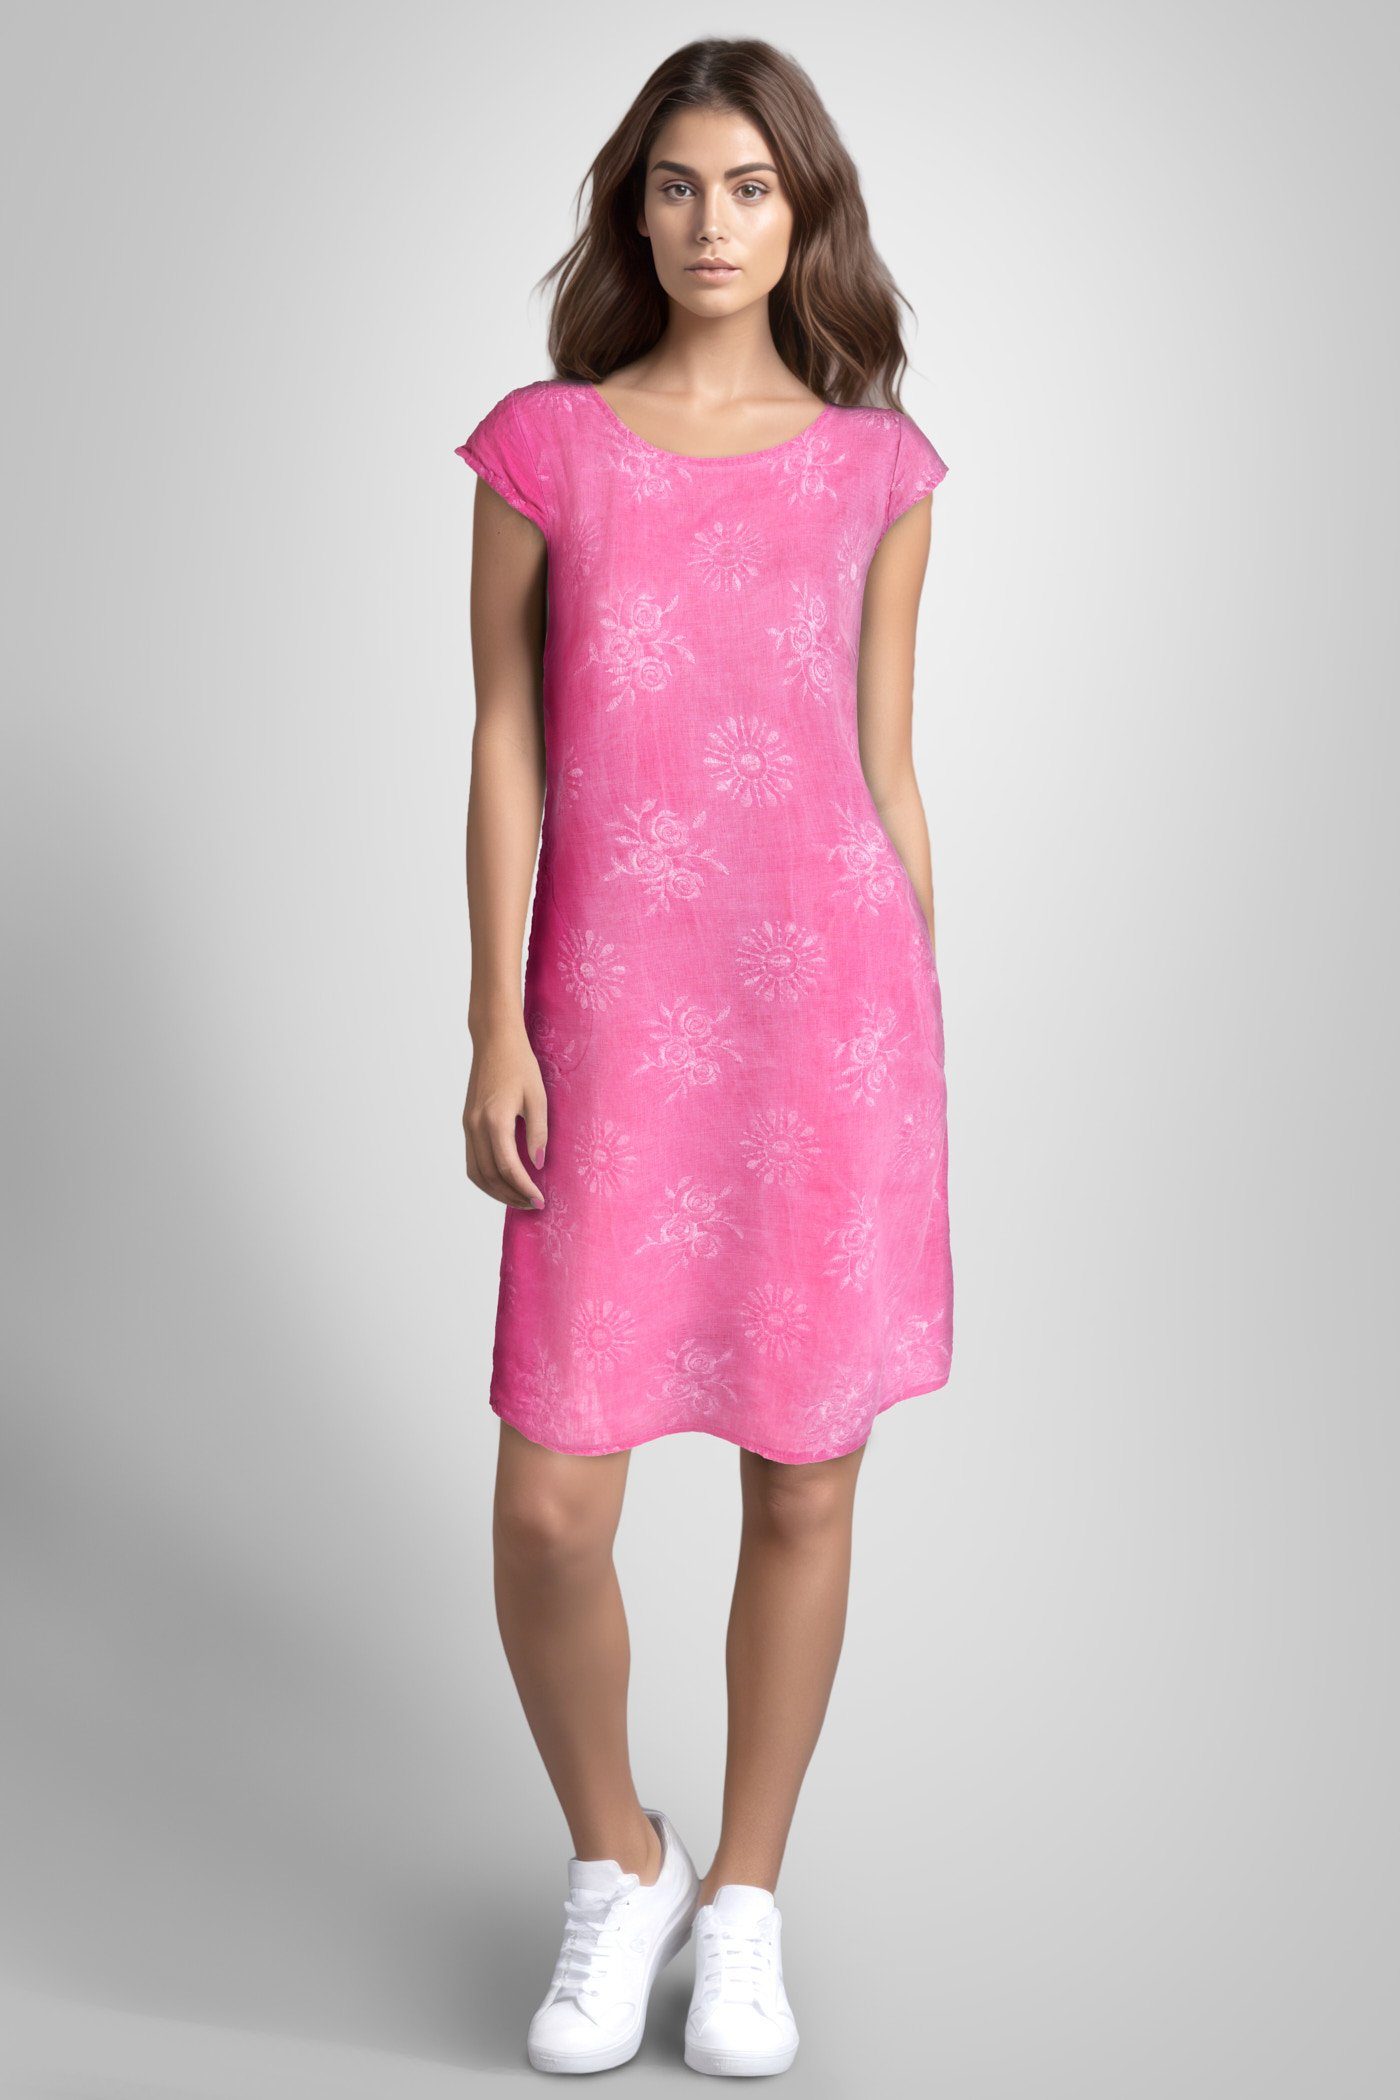 Damen Leinenkleid Stickerei knielang (1-tlg) kurzarm mit v2-pink PEKIVESSA Sommerkleid